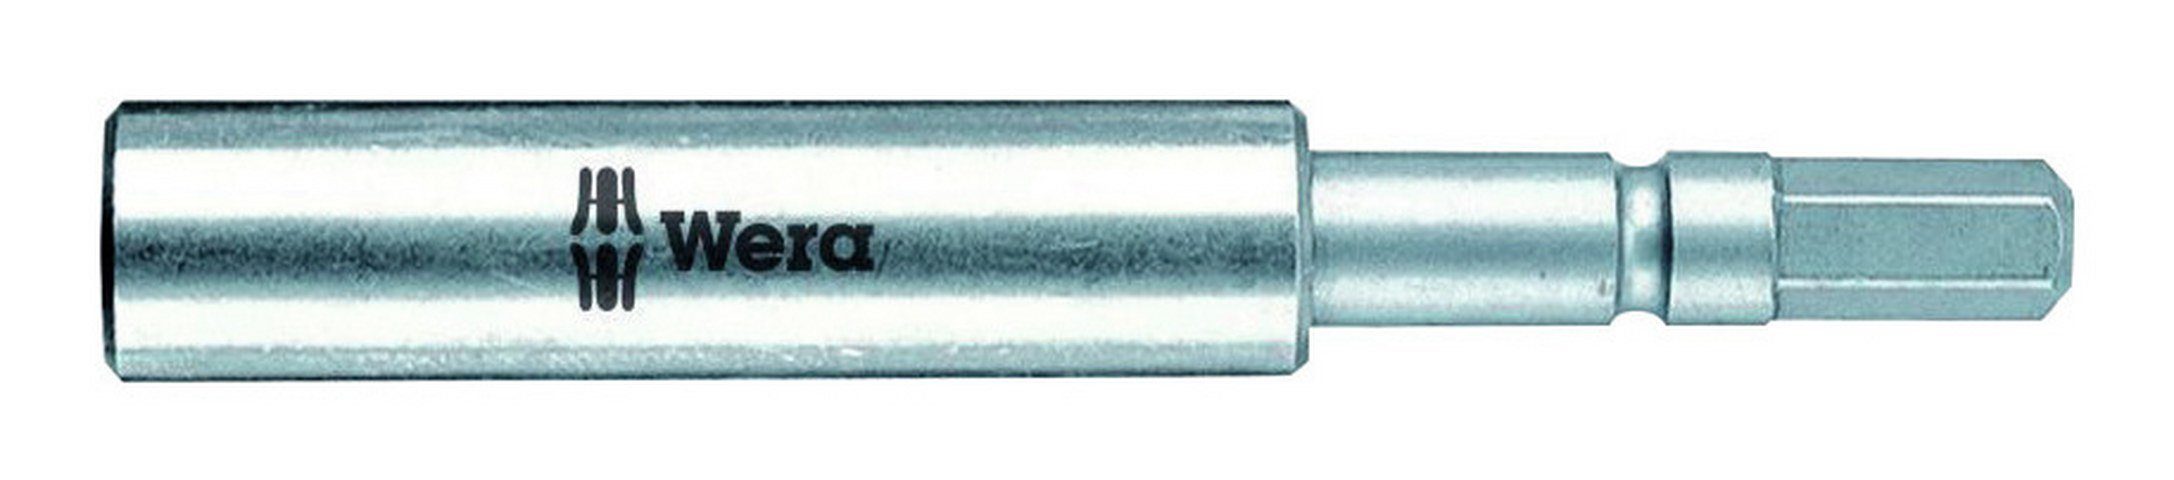 Bithalter, für 1/4" 72 + 5,5 Bits mm Magnet mm Wera Sprengring